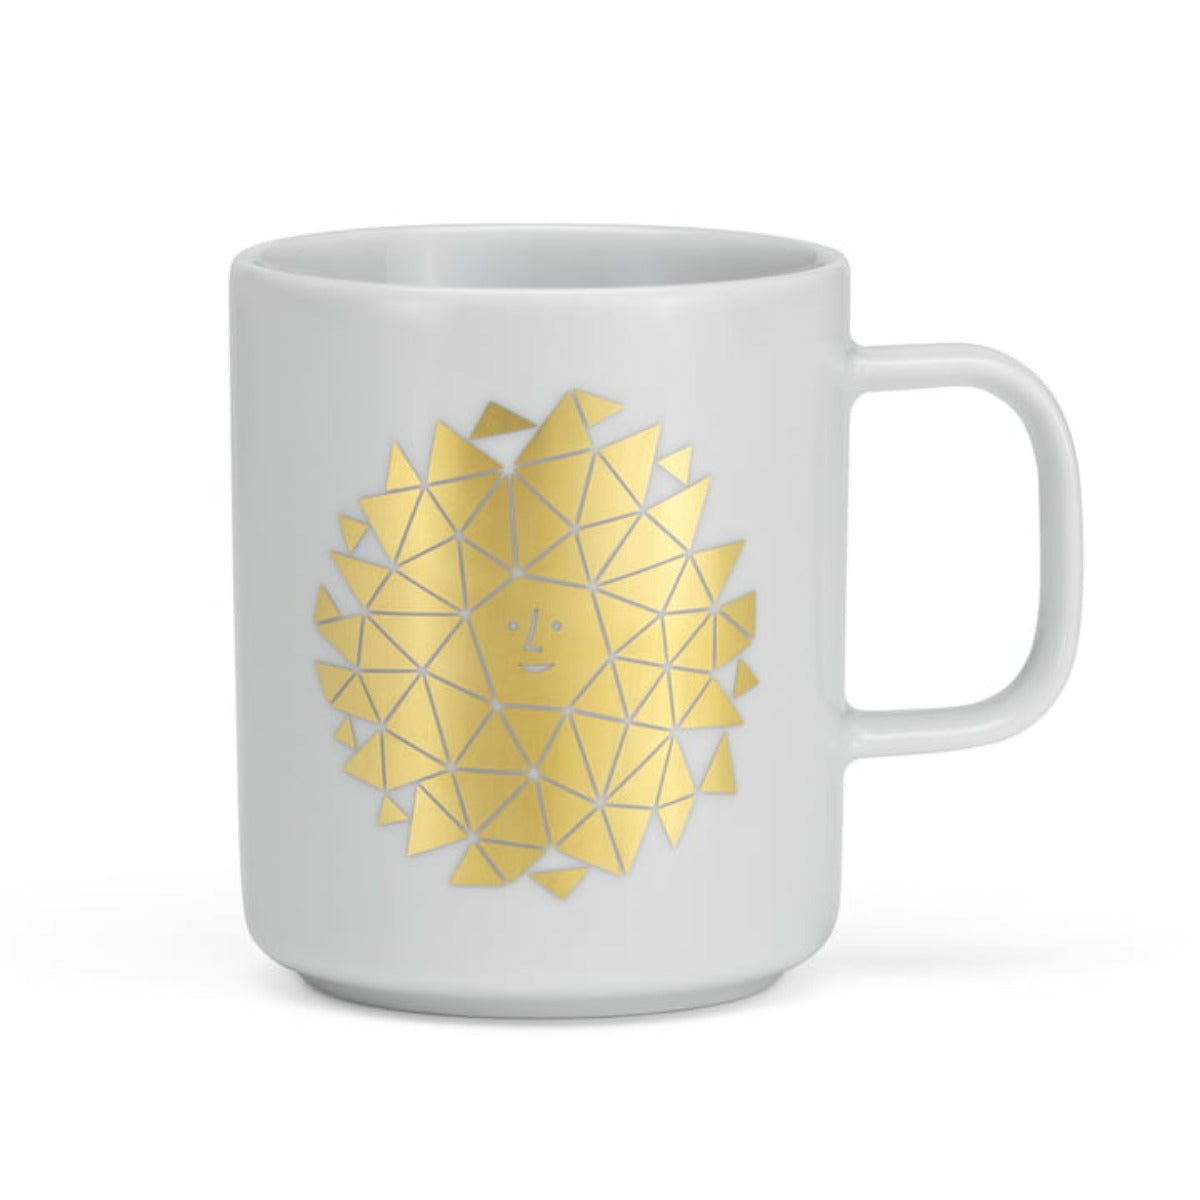 Girard Coffee Mug - New Sun